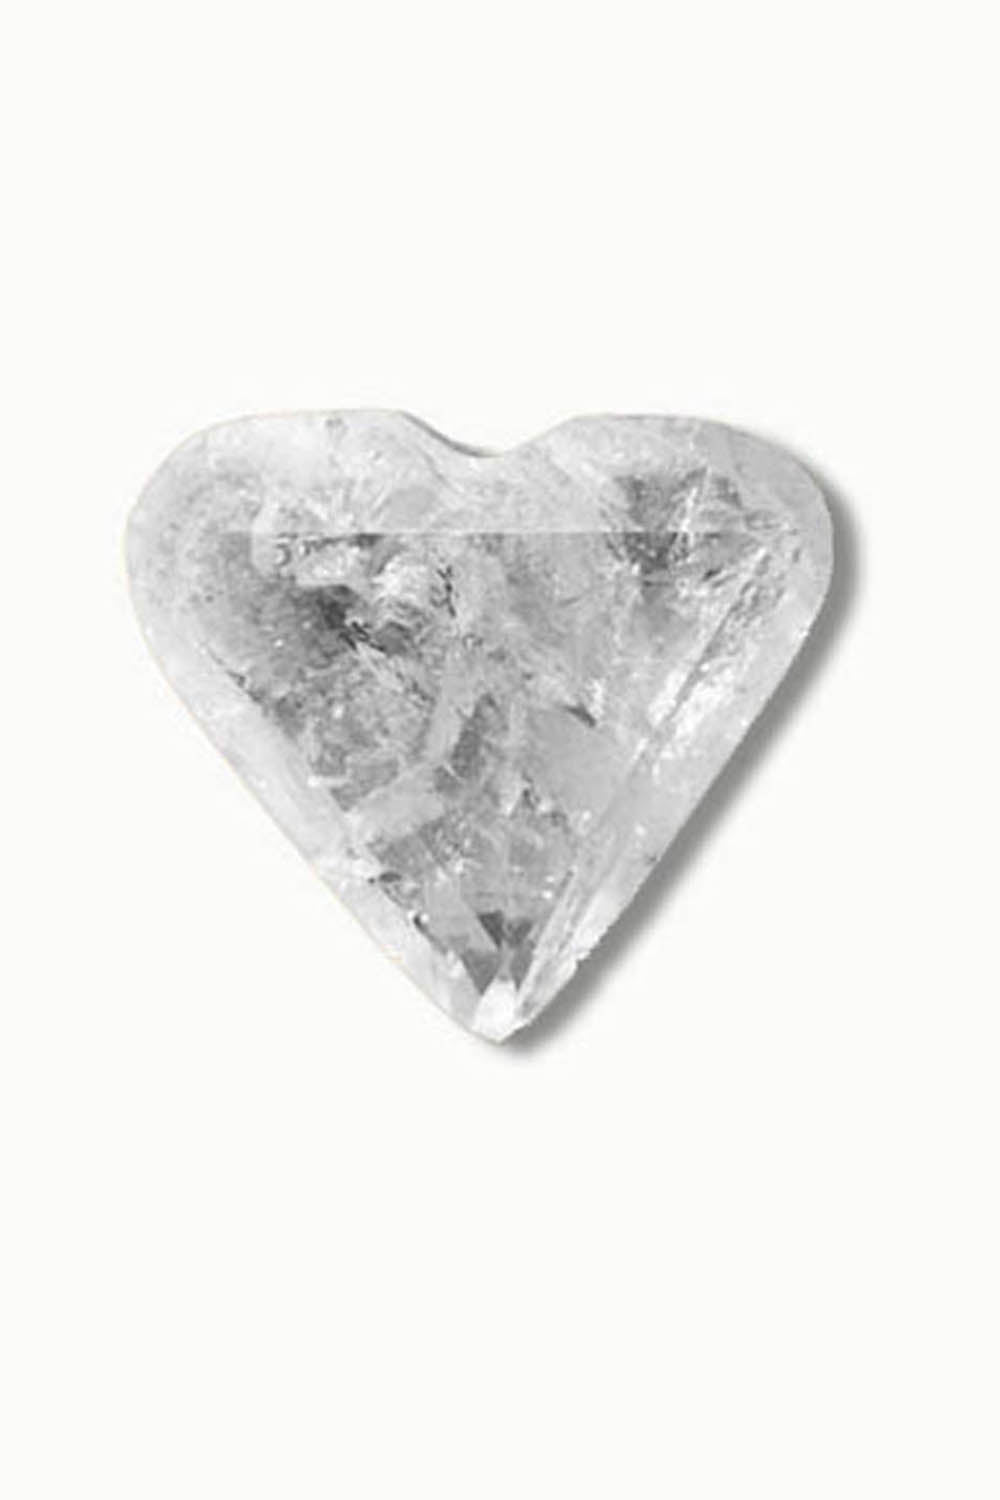 Lemurian Clear Quartz Heart Crystal